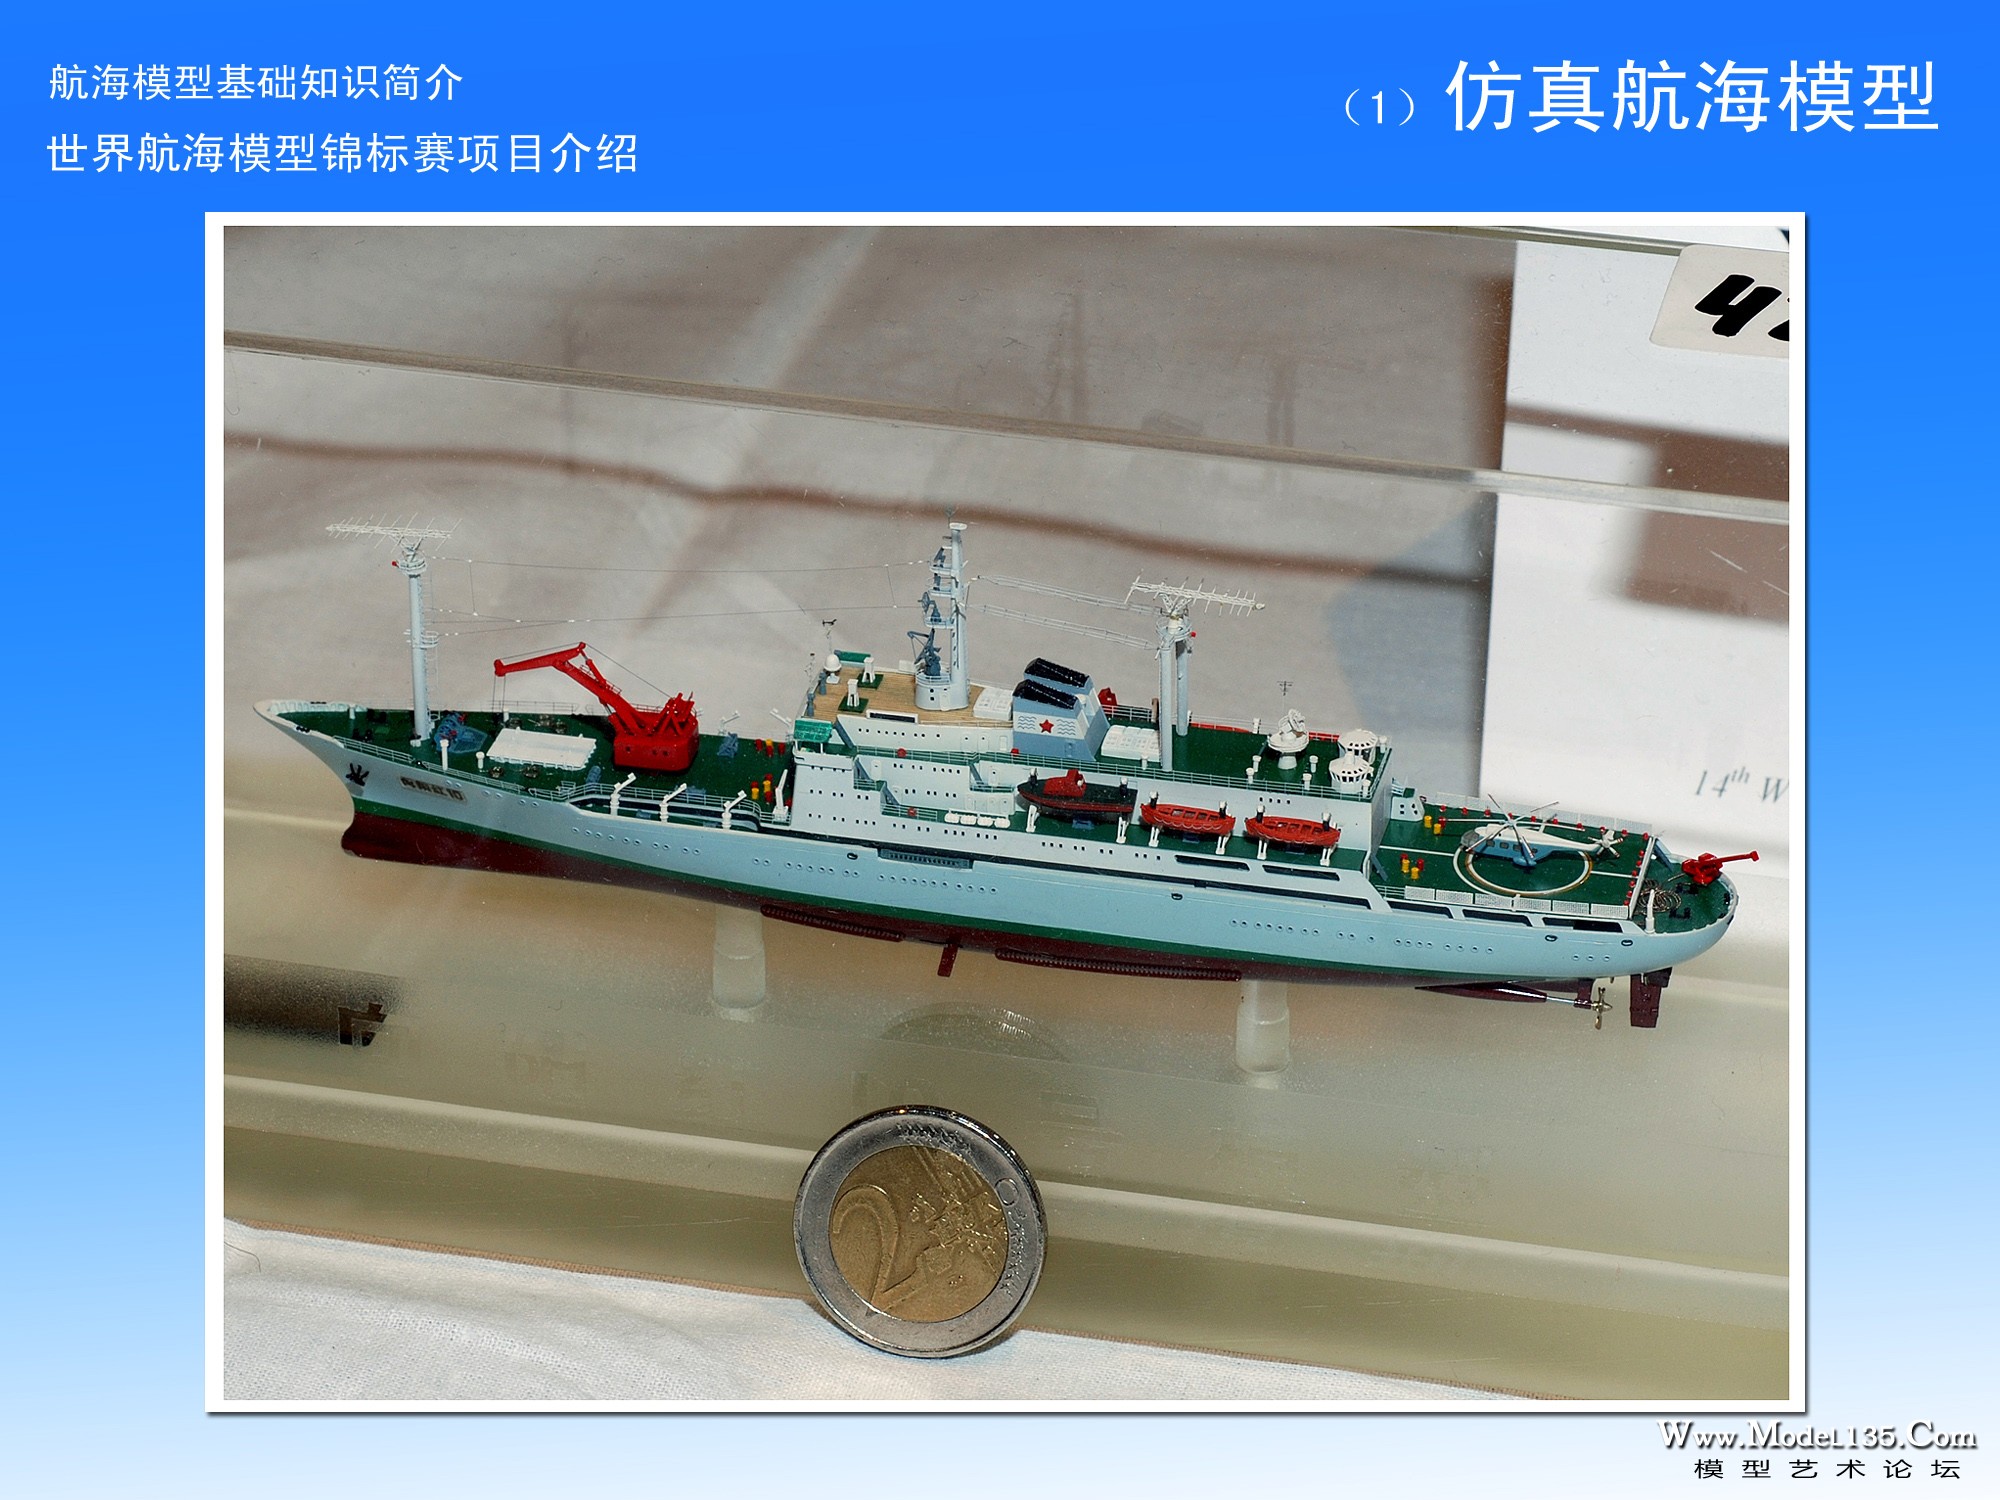 航海模型专业级竞赛介绍-3-仿真-17.jpg